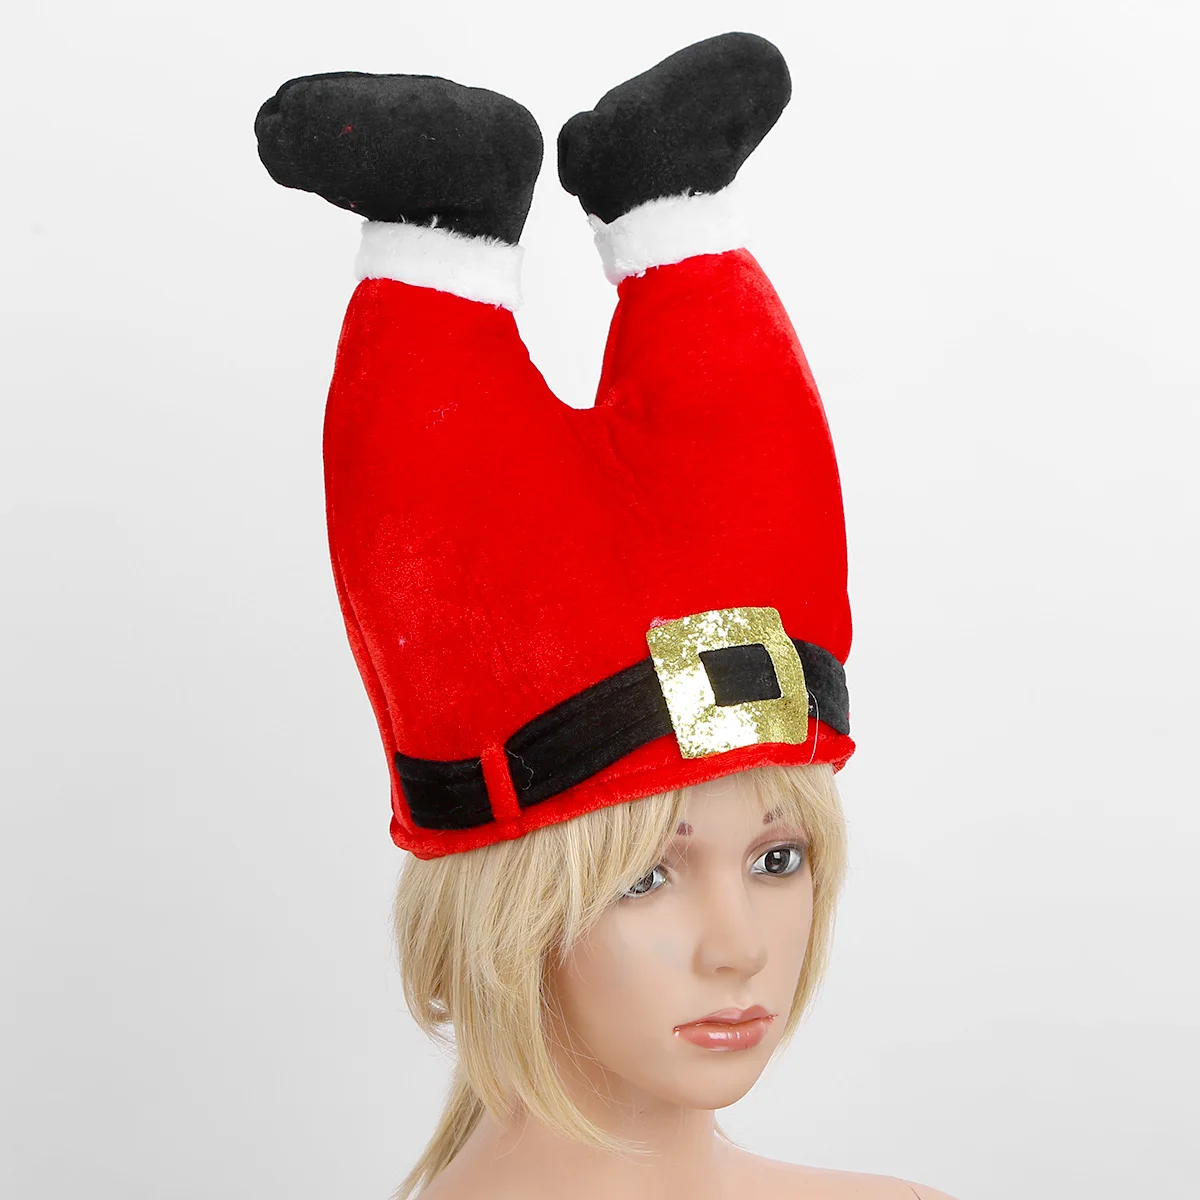 CHIMNEY SANTA HAT Kids Adult Headwear Fancy Dress Christmas Party Fun Gift UK 